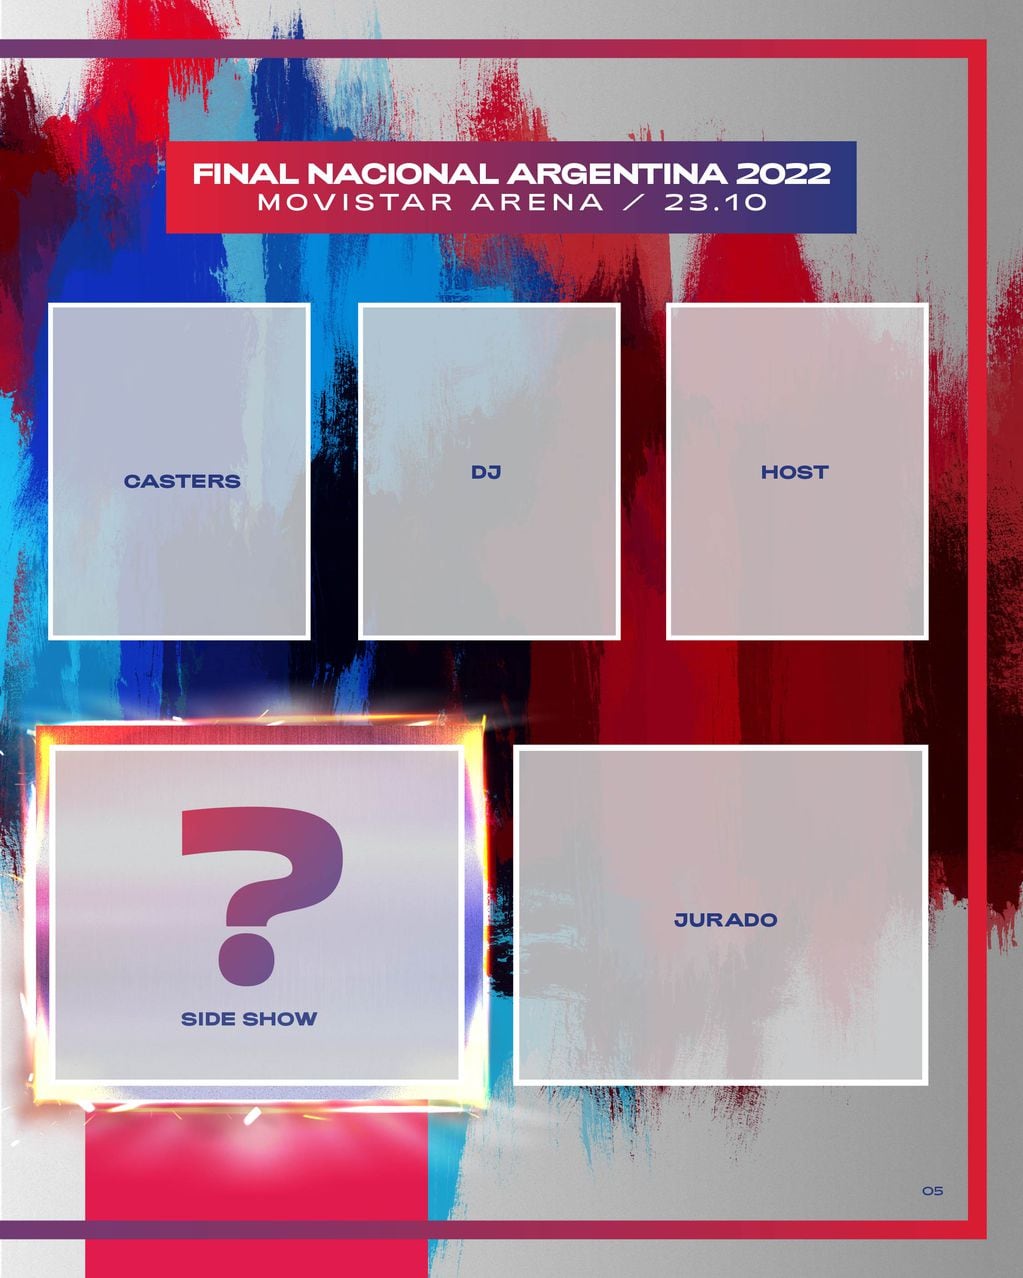 Red Bull Batalla lanzó un álbum de figuritas con los freestylers de la Final Nacional Argentina 2022